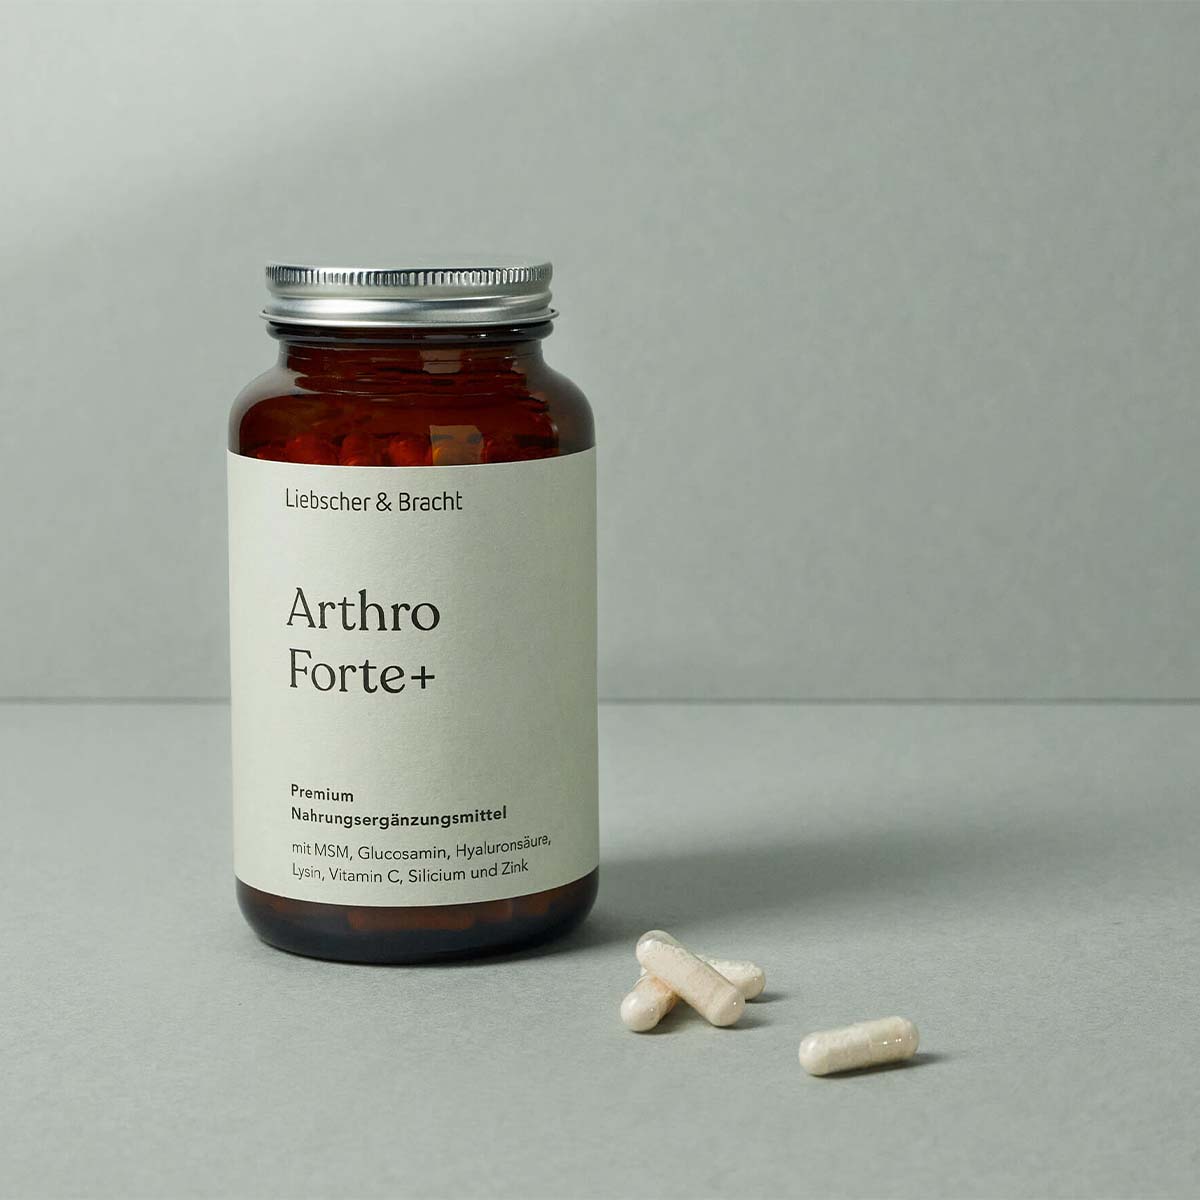 Das Nahrungsergänzungsmittel Arthro Forte+ wird in einem braunen Glasbehälter präsentiert. 